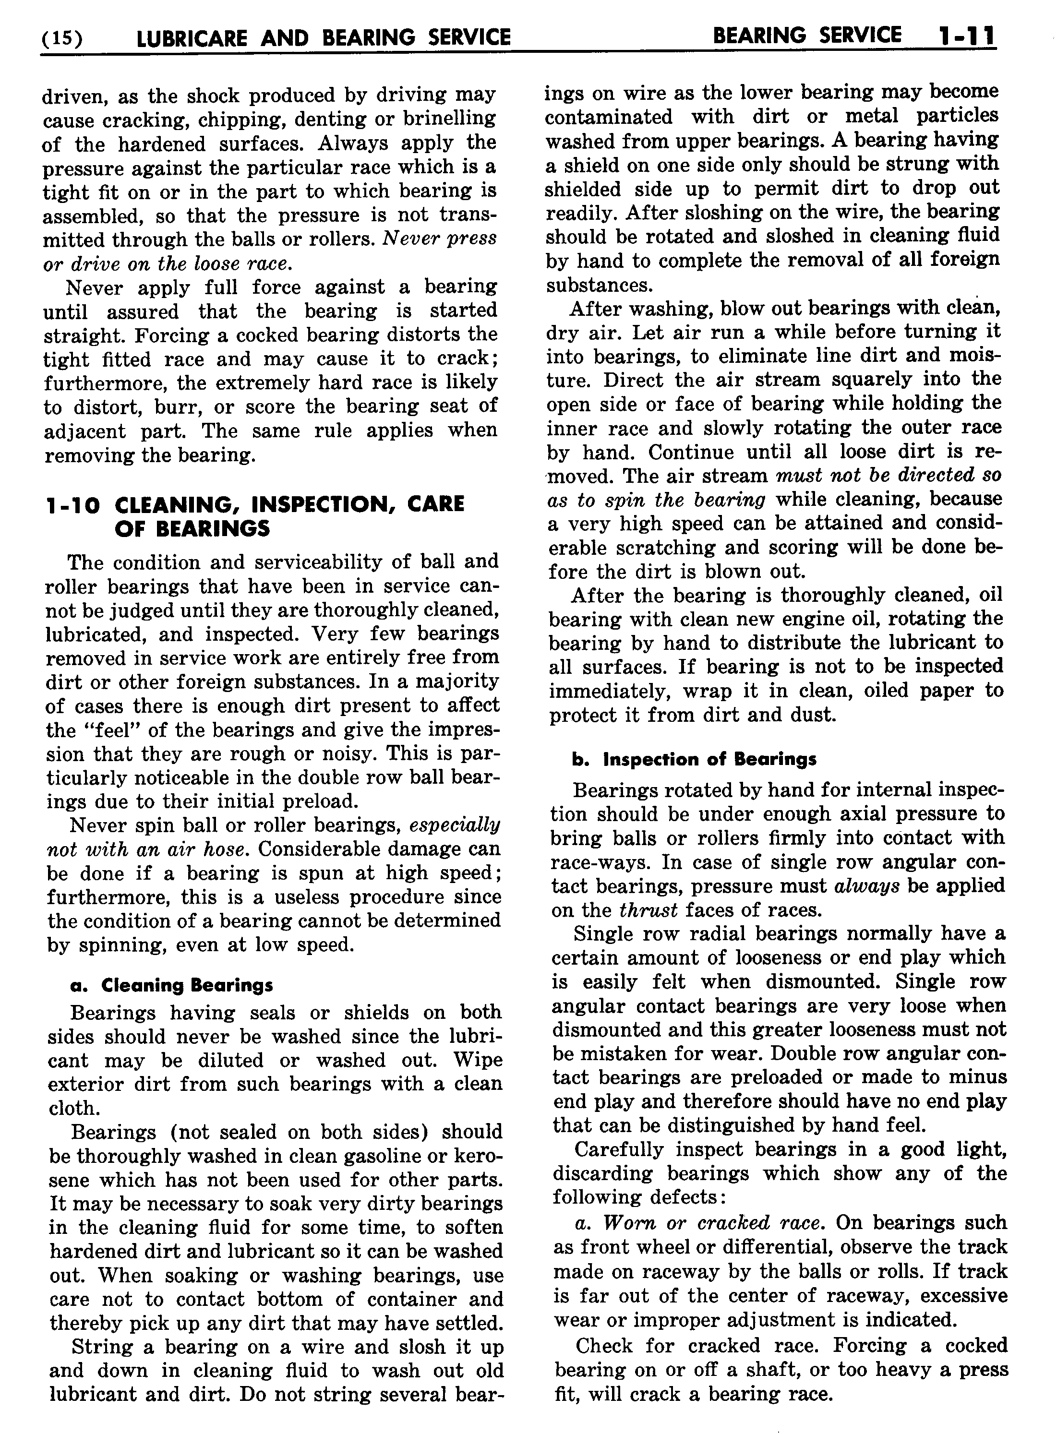 n_02 1955 Buick Shop Manual - Lubricare-011-011.jpg